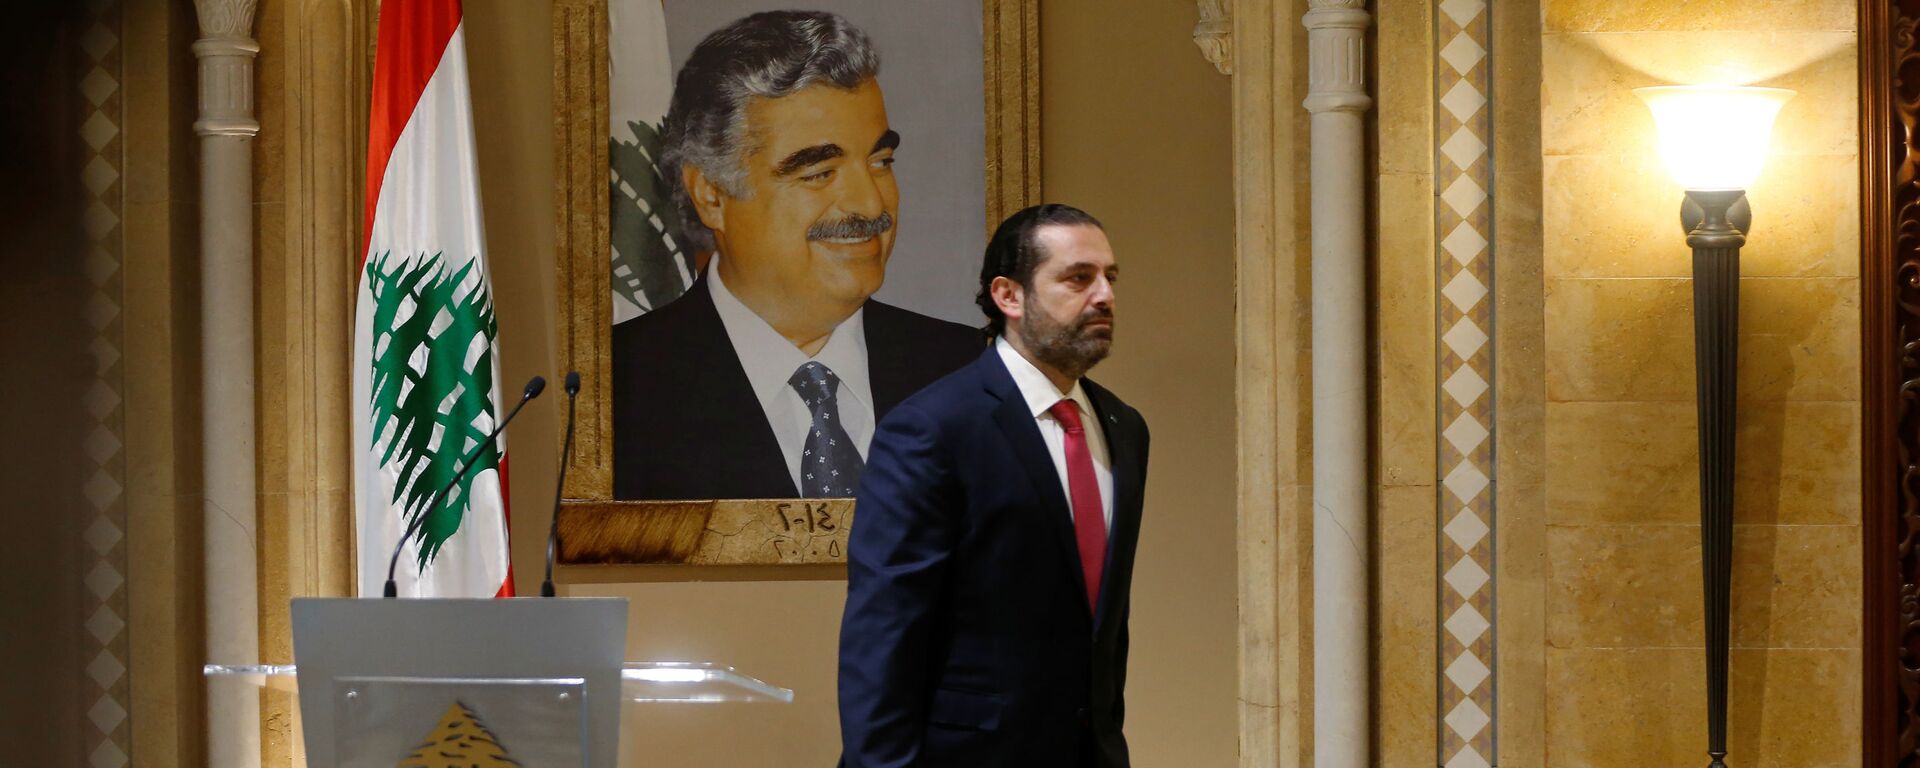 Suikasta kurban giden babası Refik Hariri'nin portresi önünde başbakanlıktan istifasını sunacağını açıklayan Saad Hariri, salondan çıkarken - Sputnik Türkiye, 1920, 30.10.2021